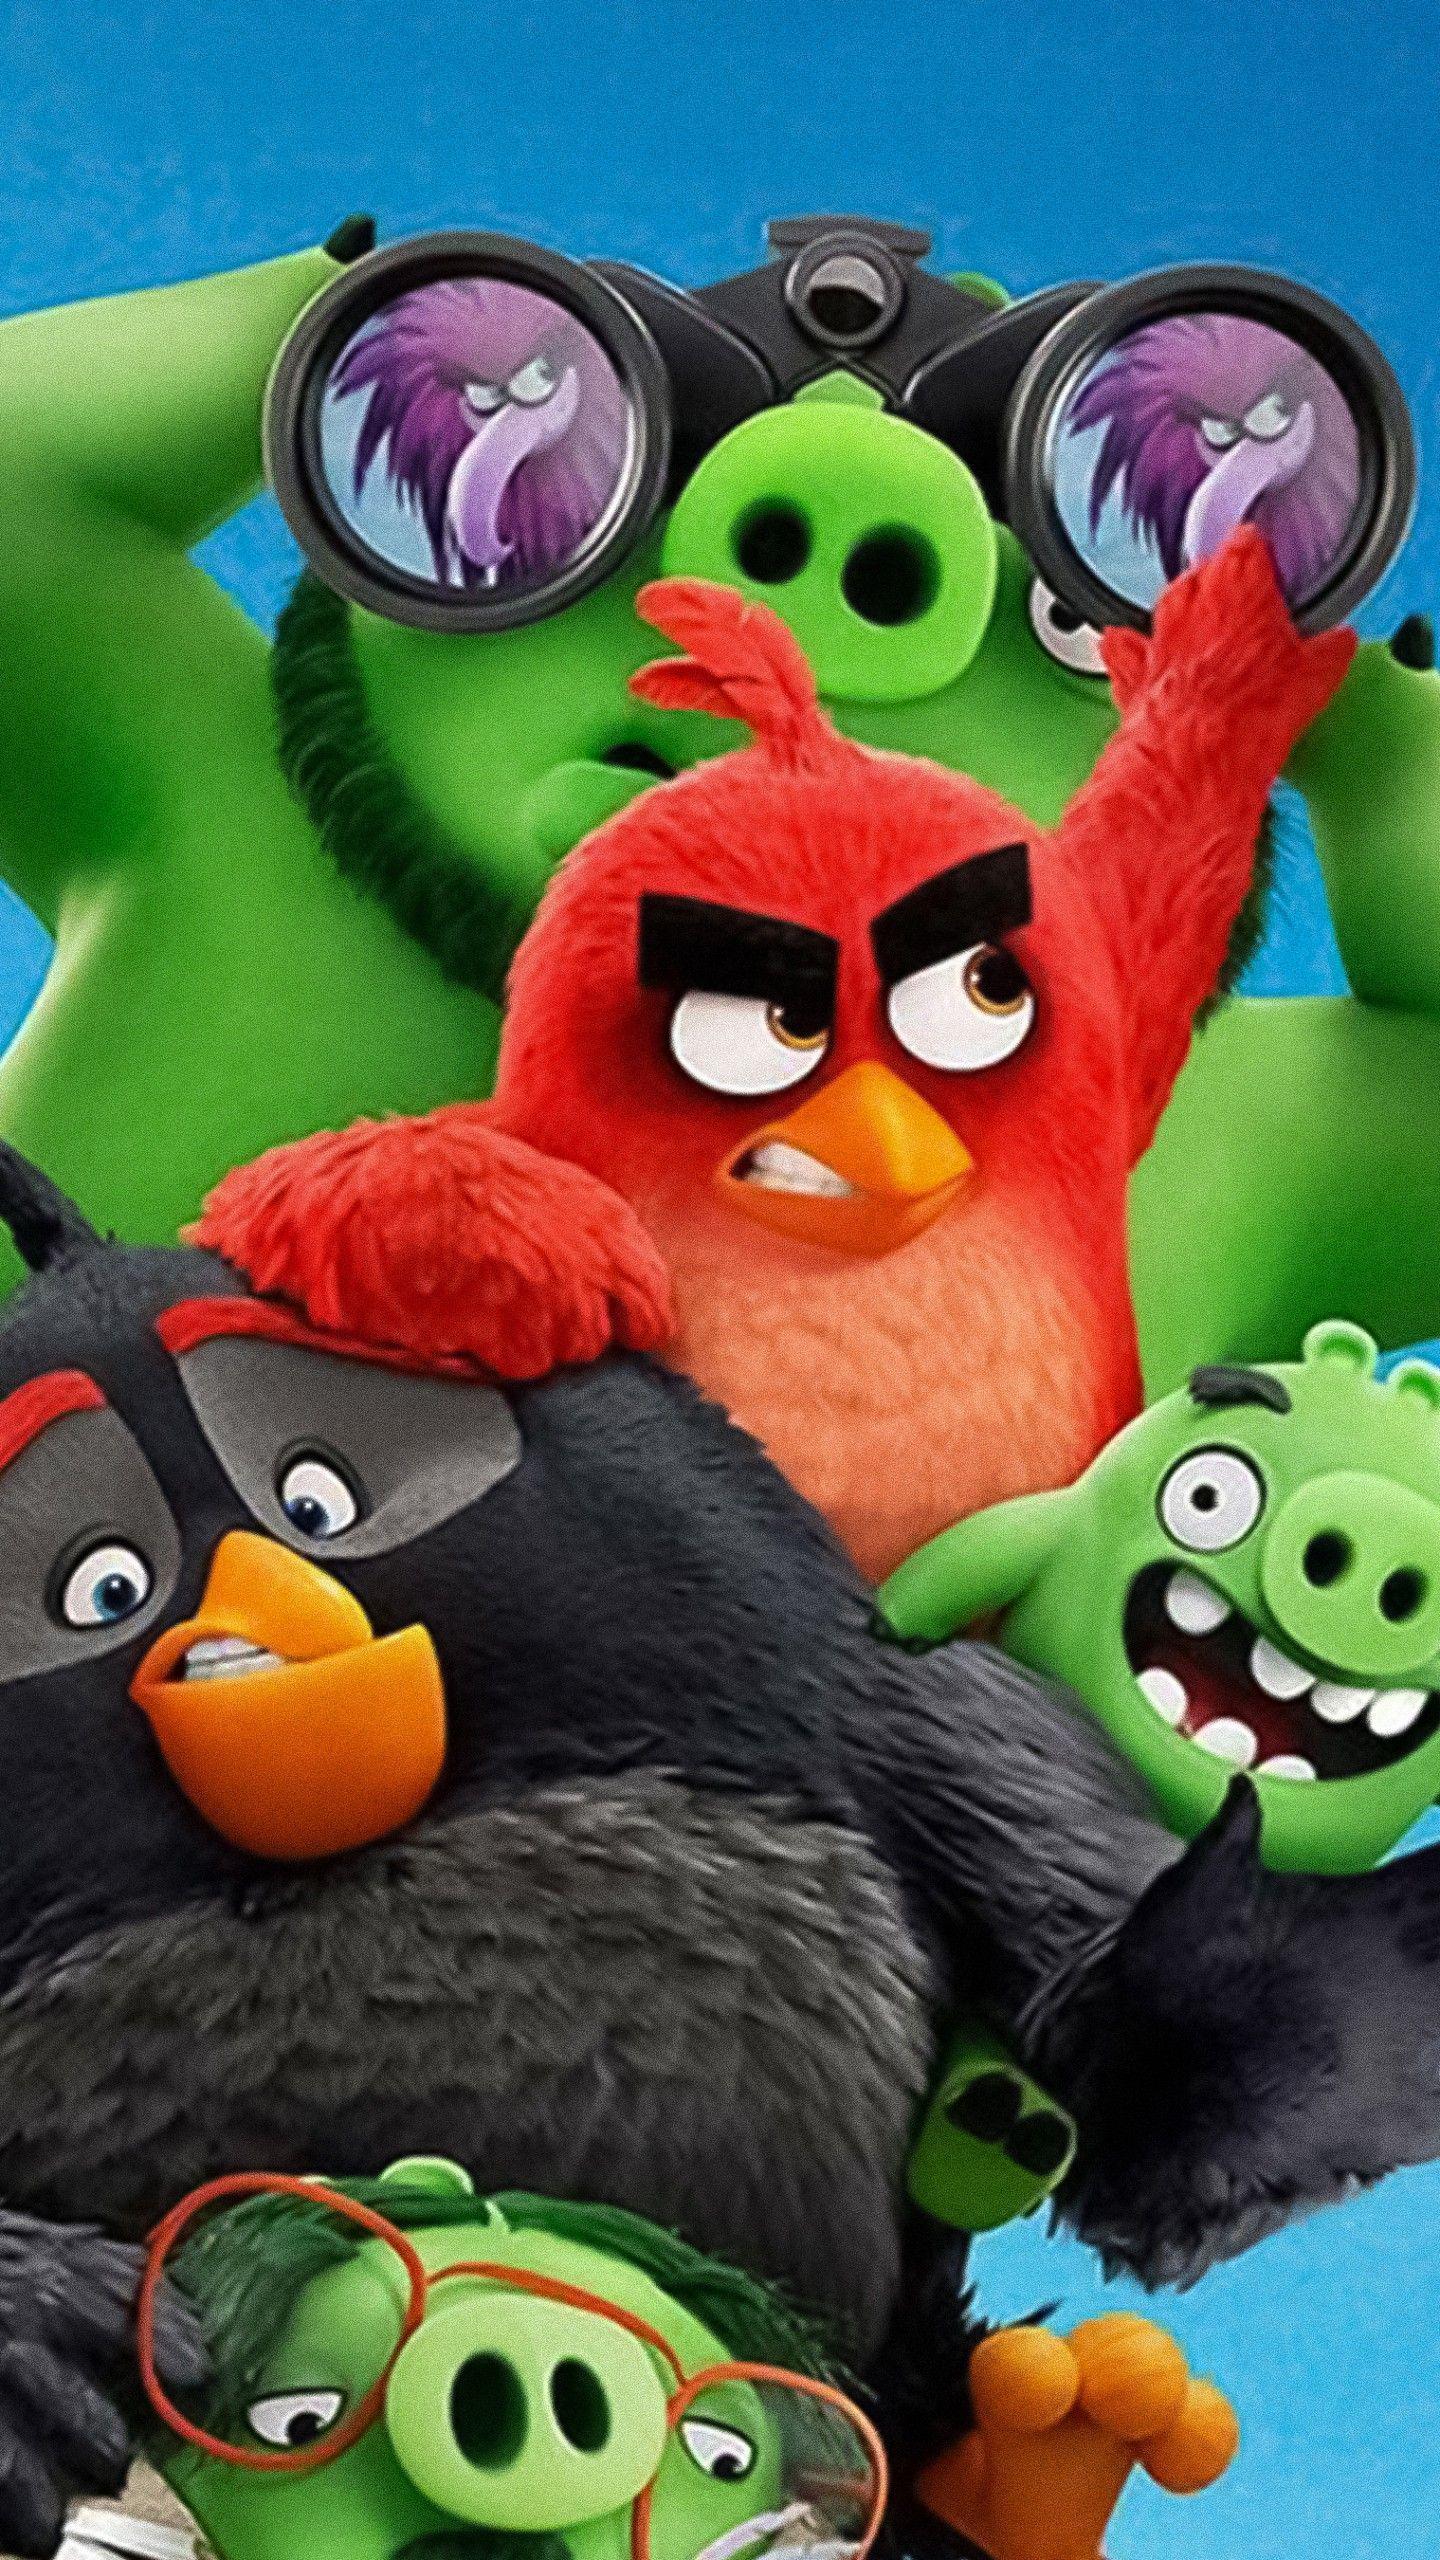 Angry Birds phần 2 ra rạp kỷ niệm 10 năm trò chơi chim điên